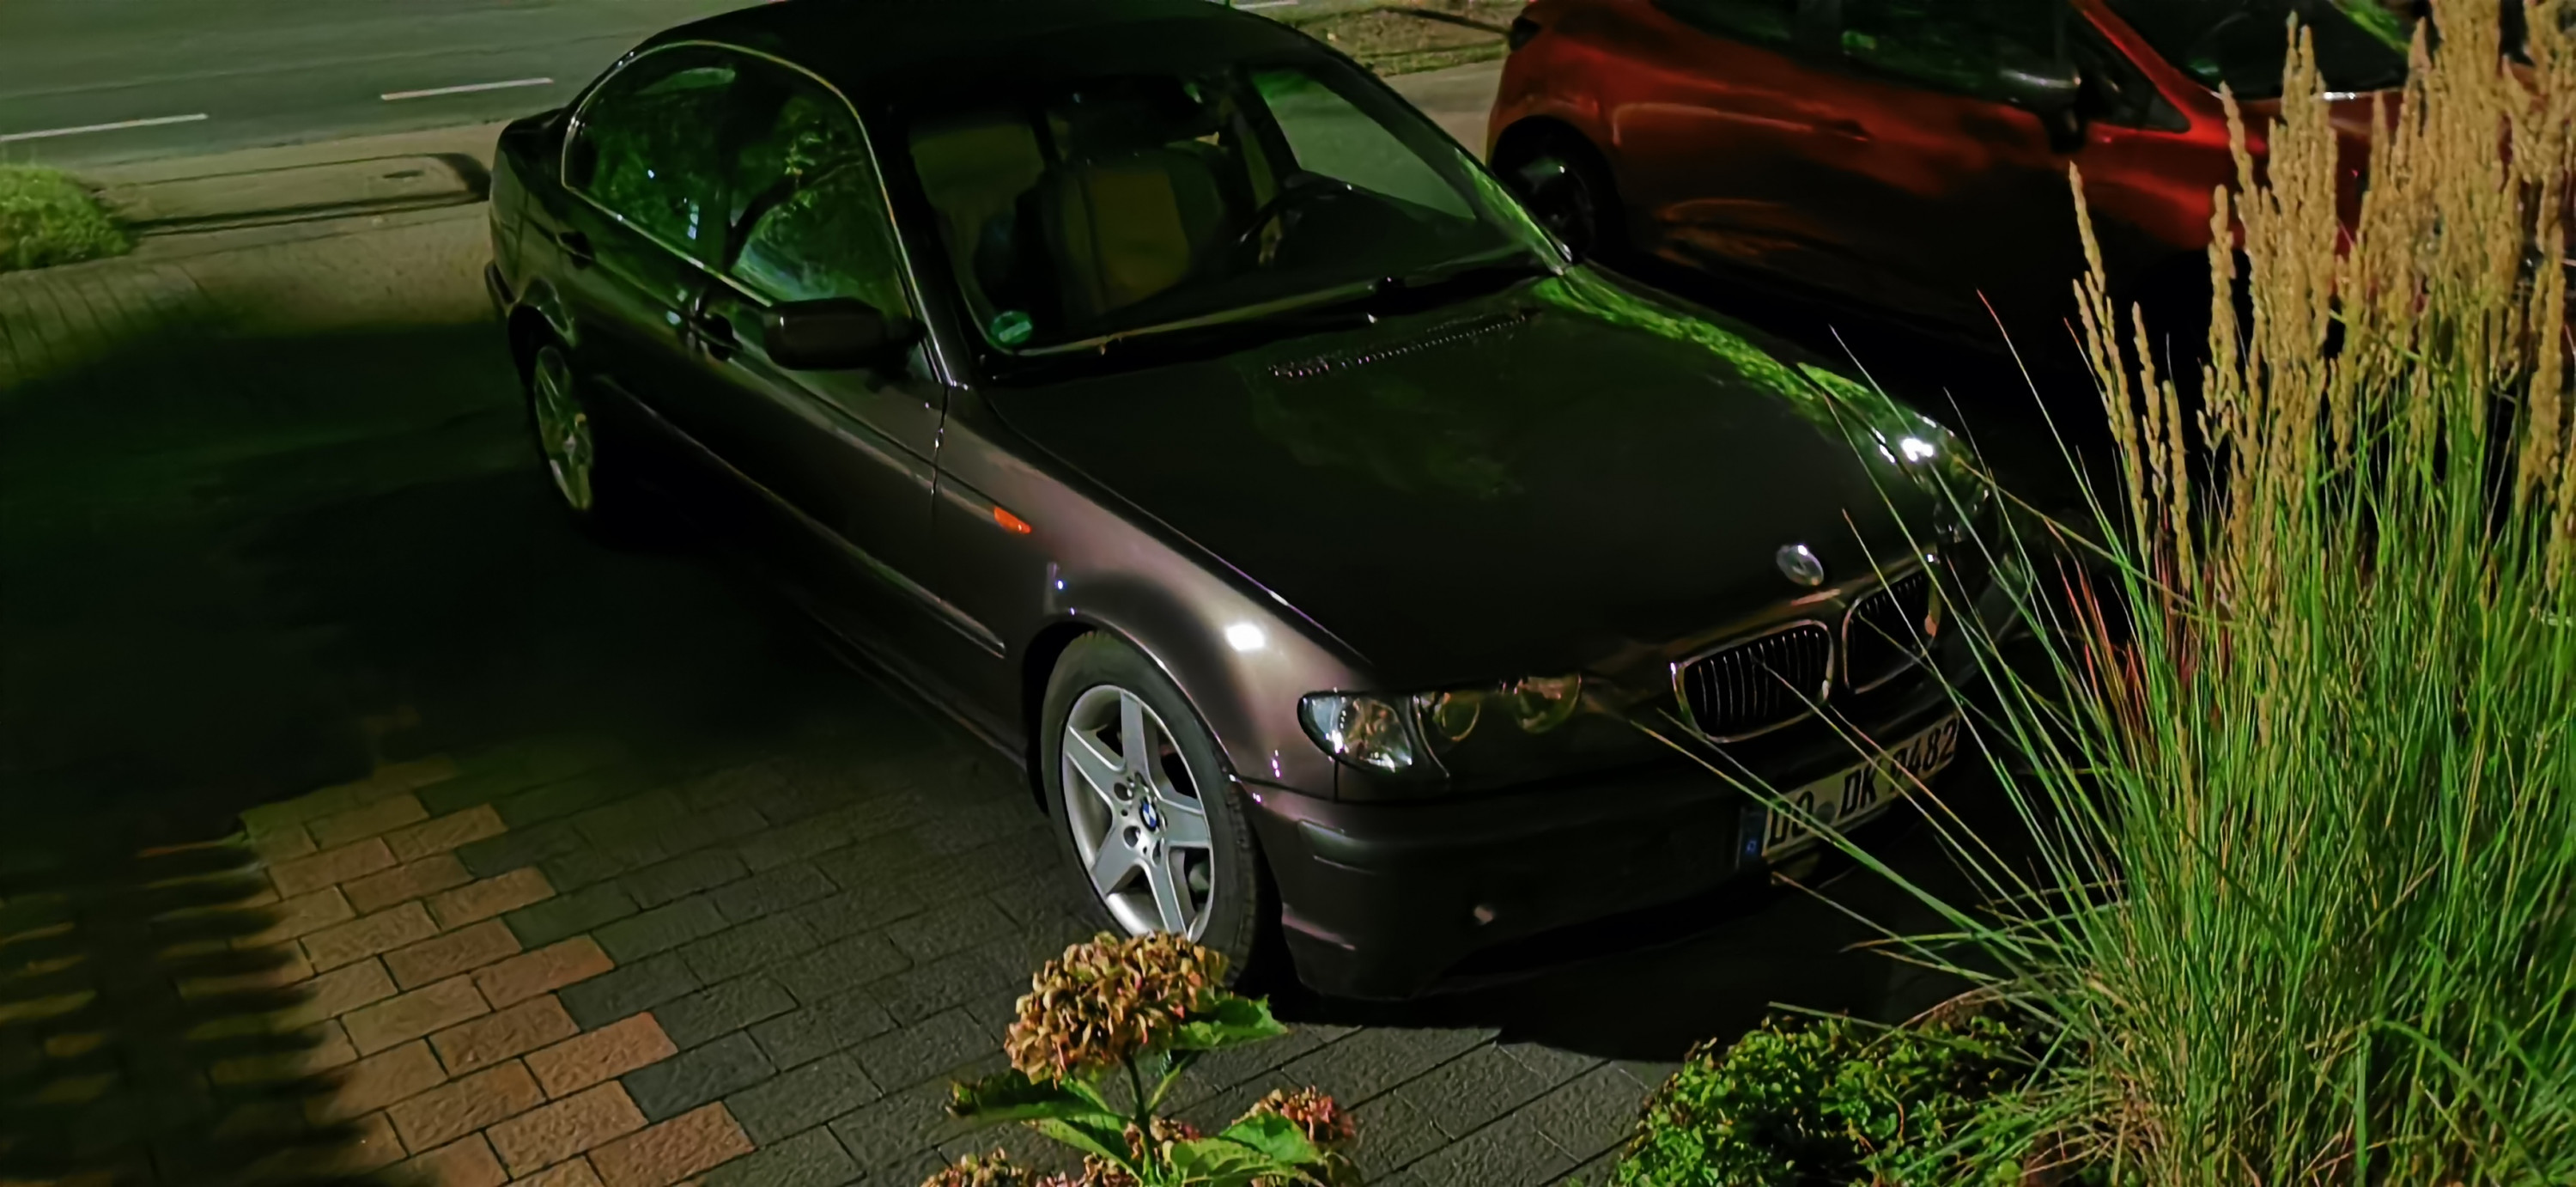 BMW 325i SMG Nachtaufnahme